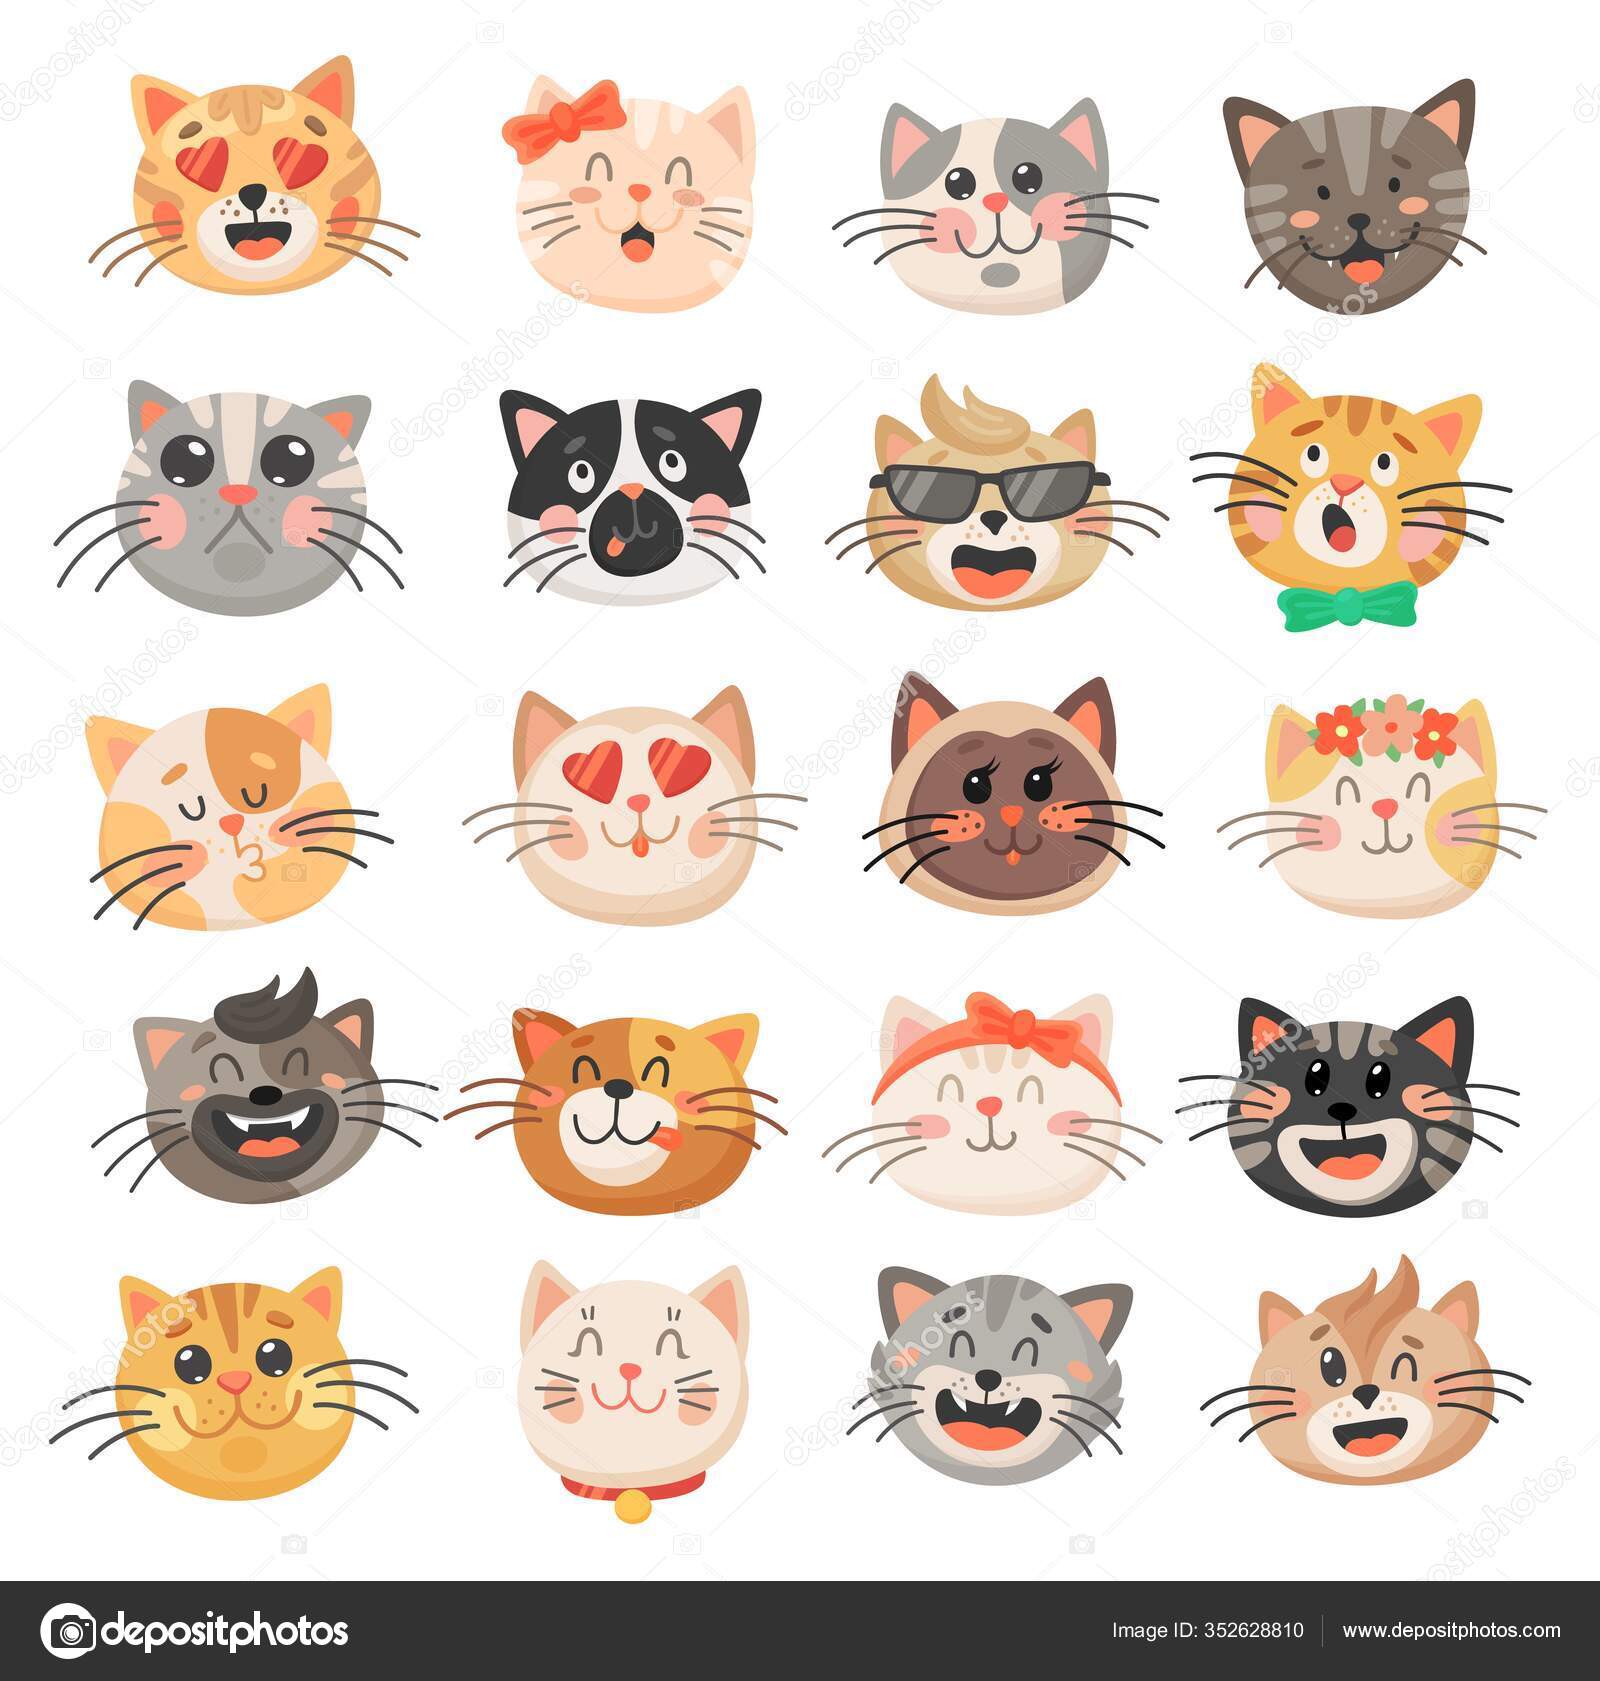 Um gato de desenho animado com diferentes expressões faciais